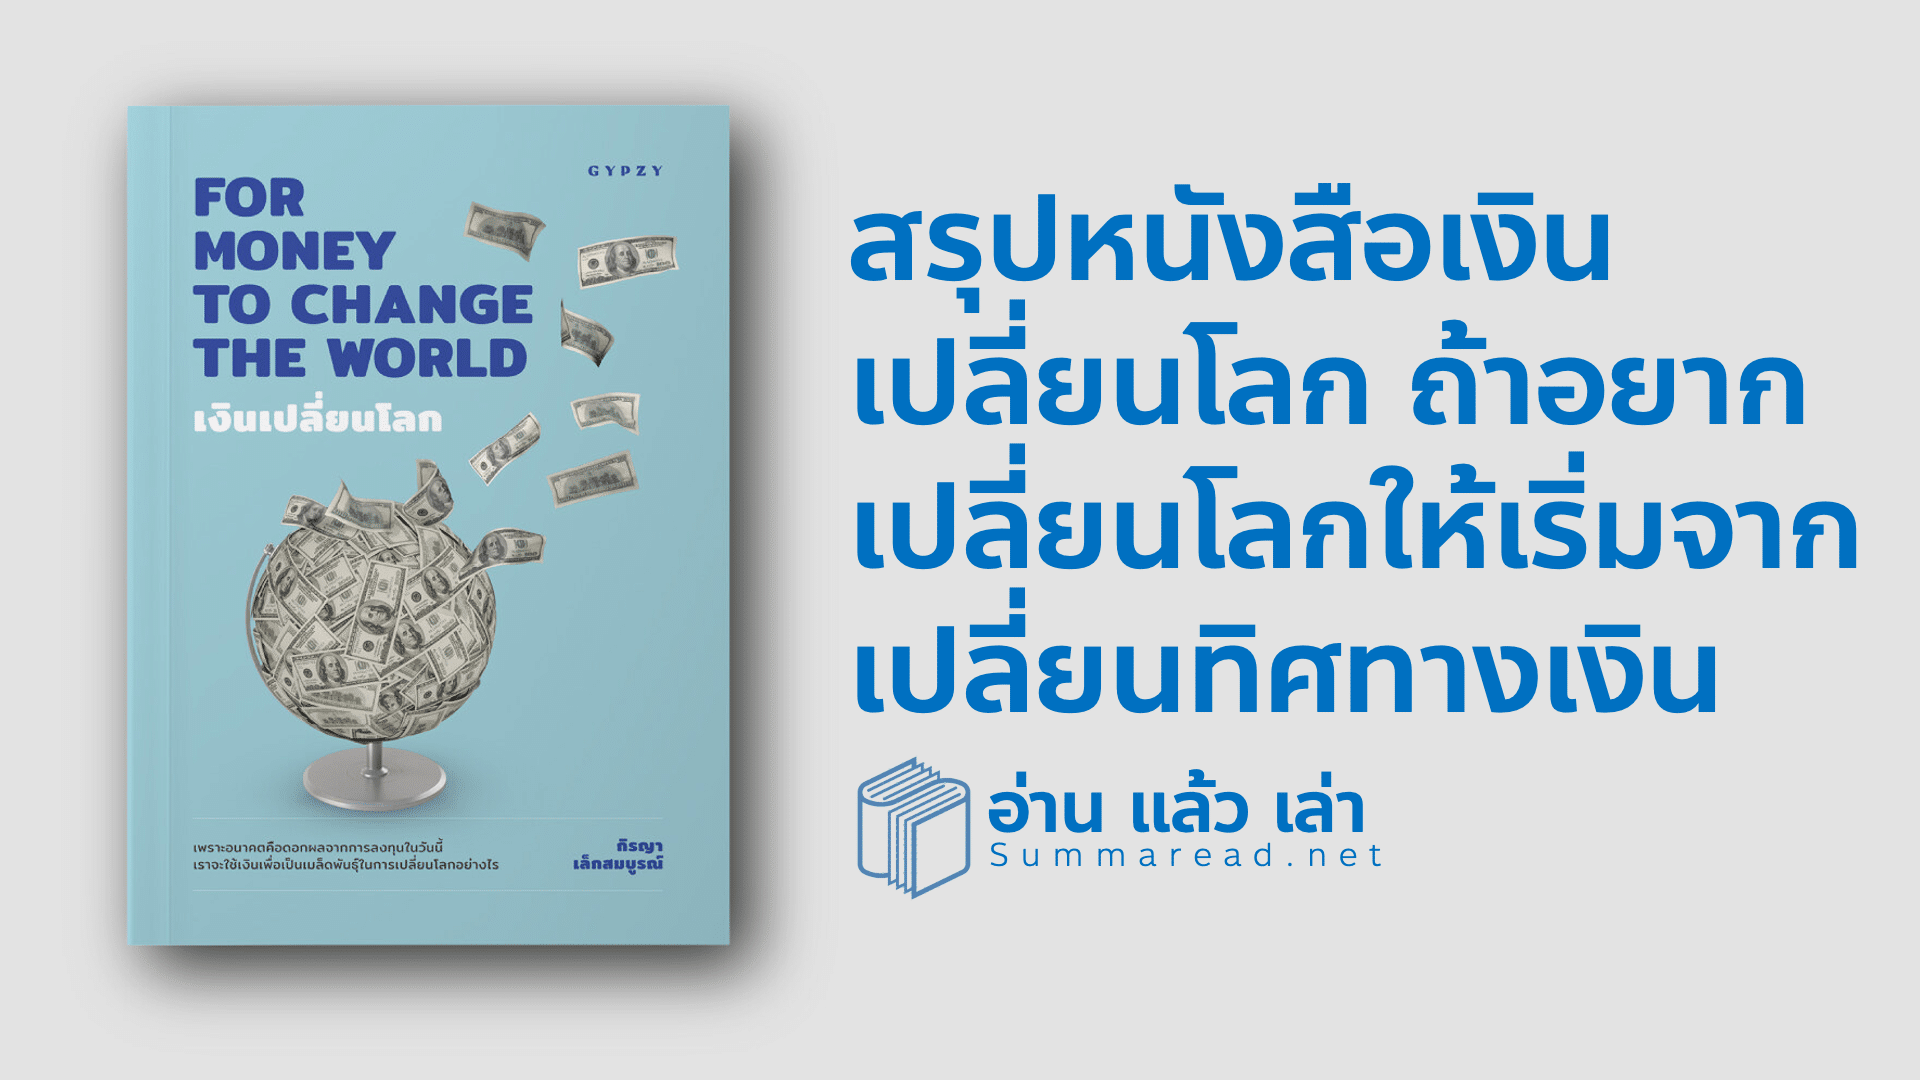 สรุปหนังสือ For Money to Change The World เงินเปลี่ยนโลก กิรญา เล็กสมบูรณ์ เขียน เมื่อเงินขับเคลื่อนโลก อยากเปลี่ยนโลกแค่เปลี่ยนทิศทางเงิน